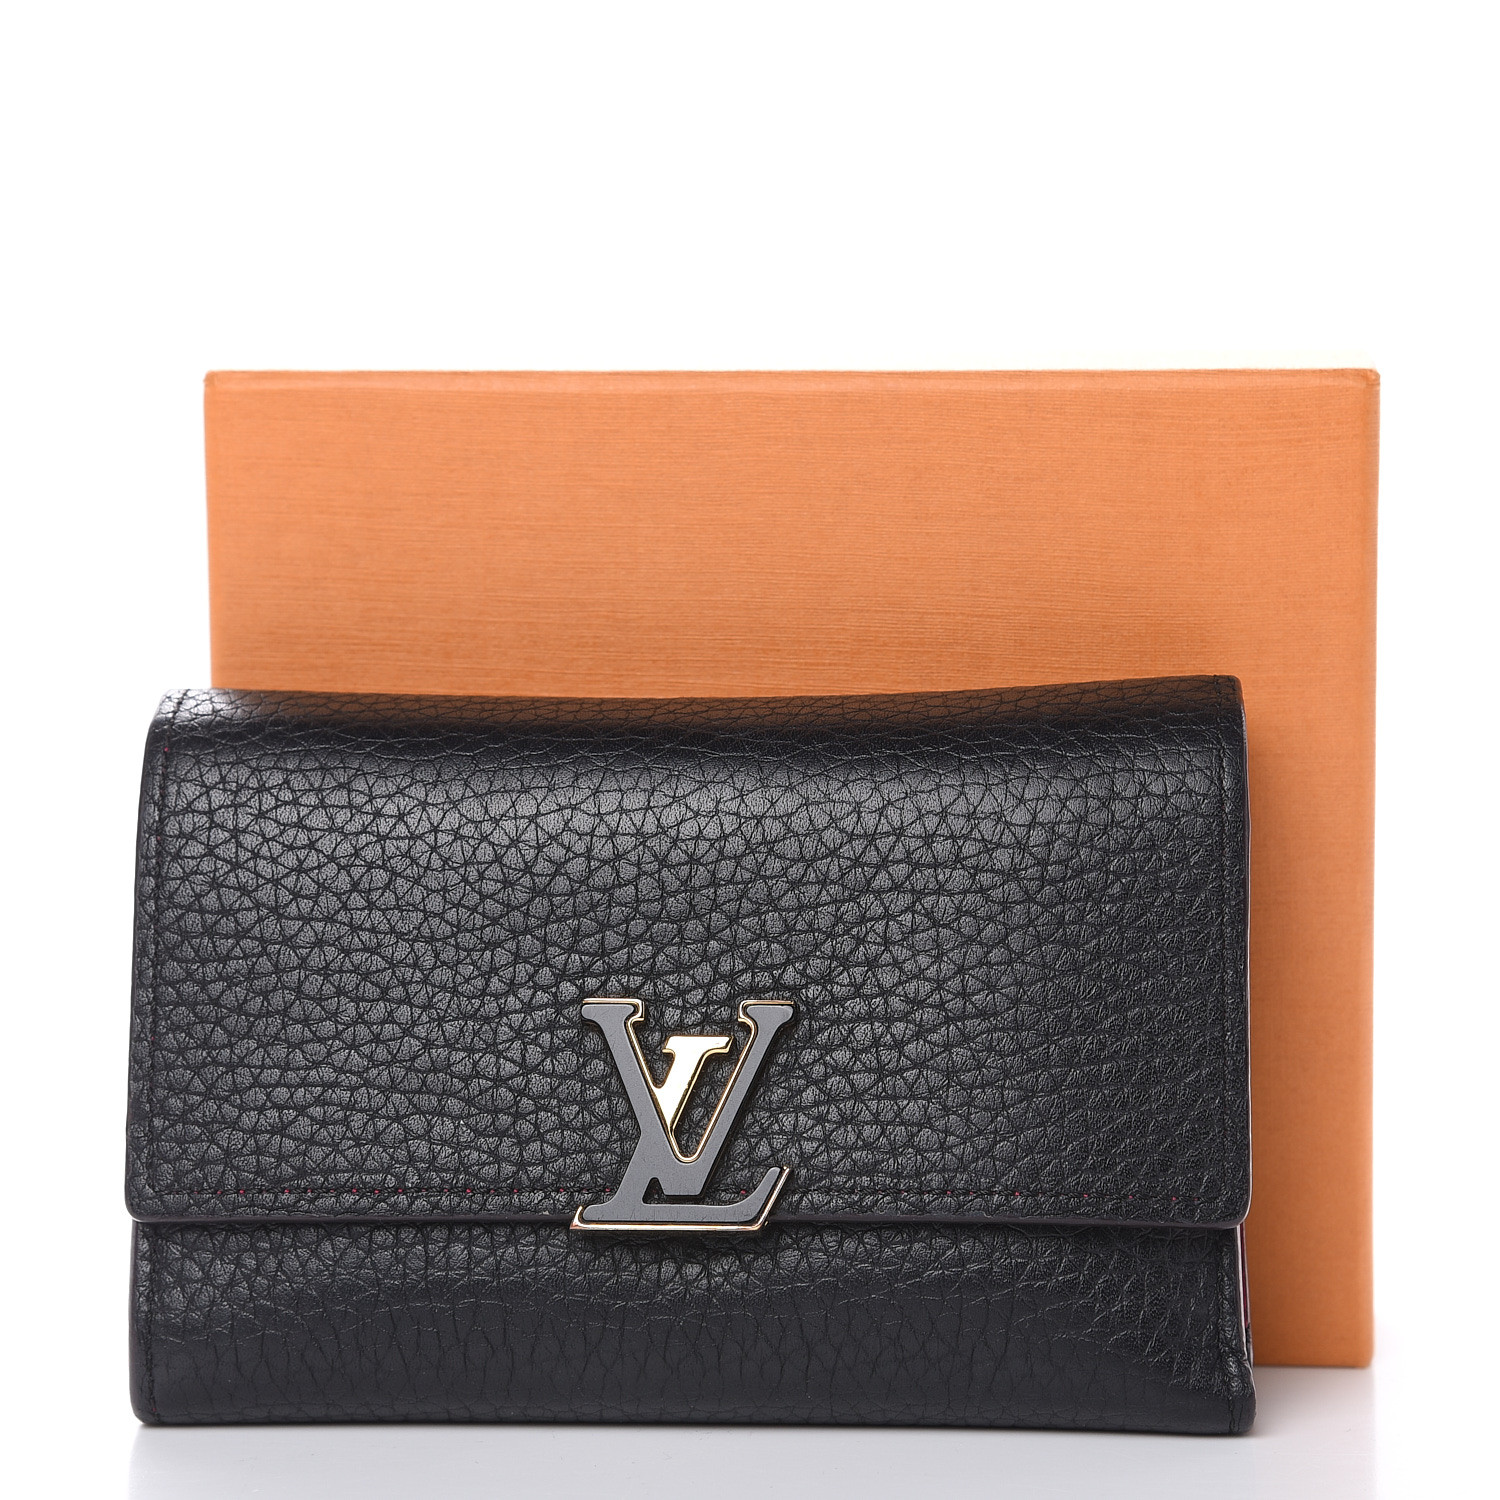 LOUIS VUITTON Taurillon Capucines Compact Wallet Black 481277